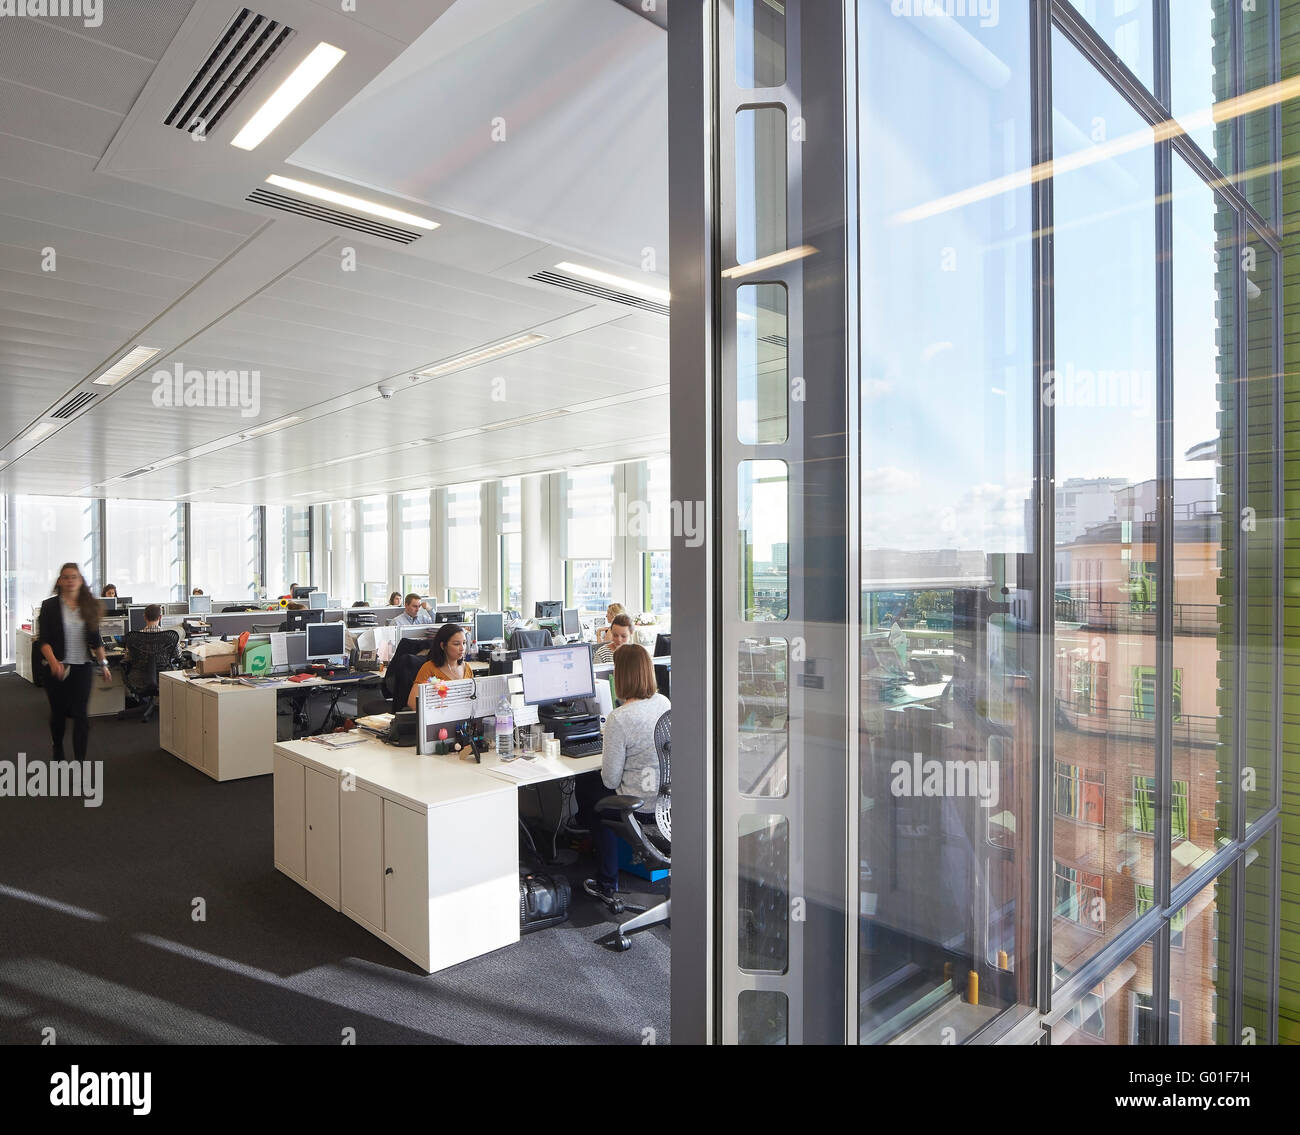 Open plan office entièrement vitré. Central Saint Giles, London, Royaume-Uni. Architecte : Renzo Piano Building Workshop, 2015. Banque D'Images